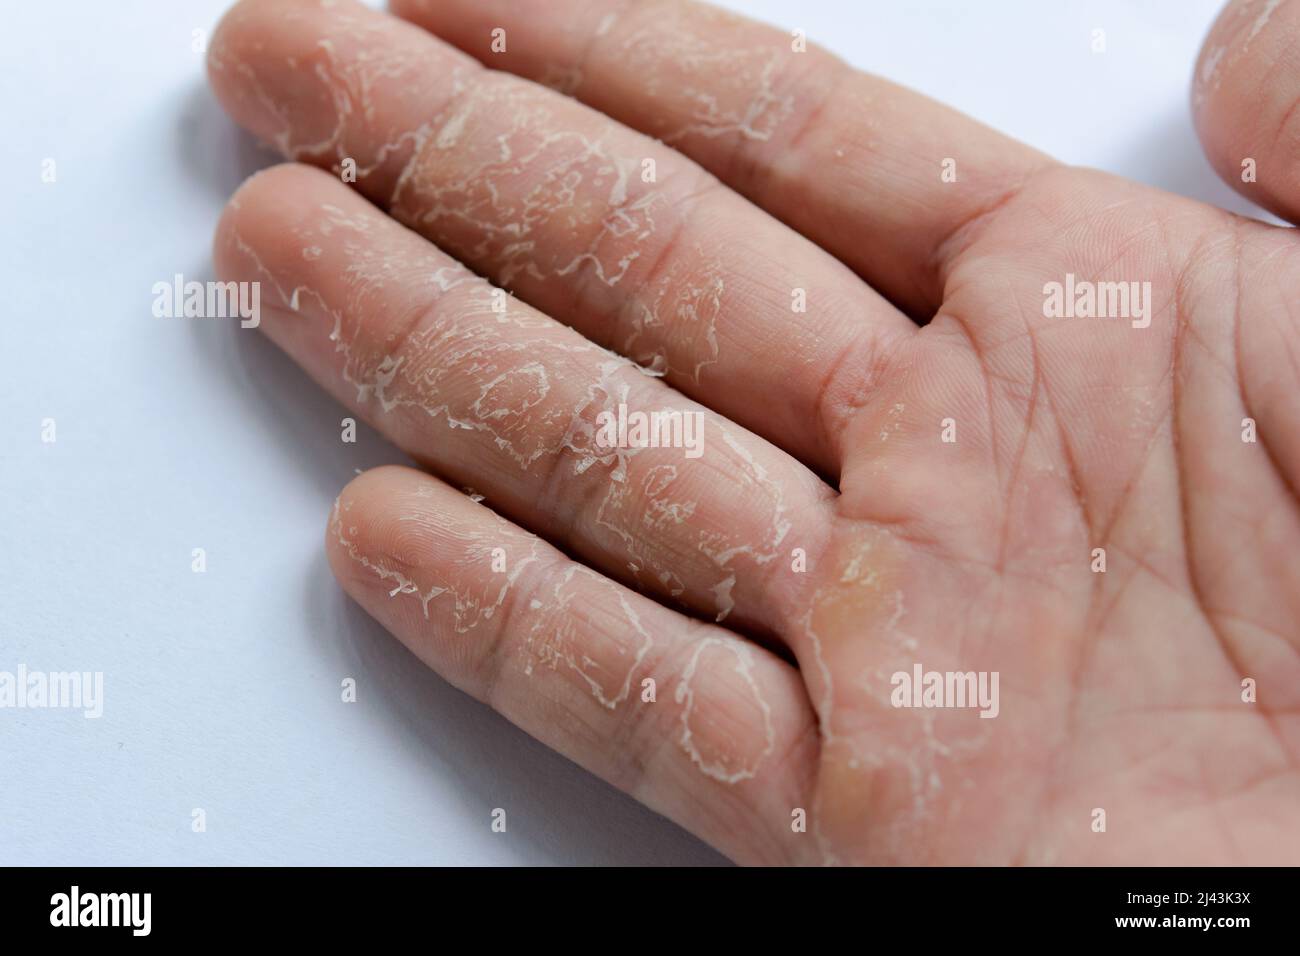 Haut an Hand und Fingern schälen. Desquamation Stockfotografie - Alamy